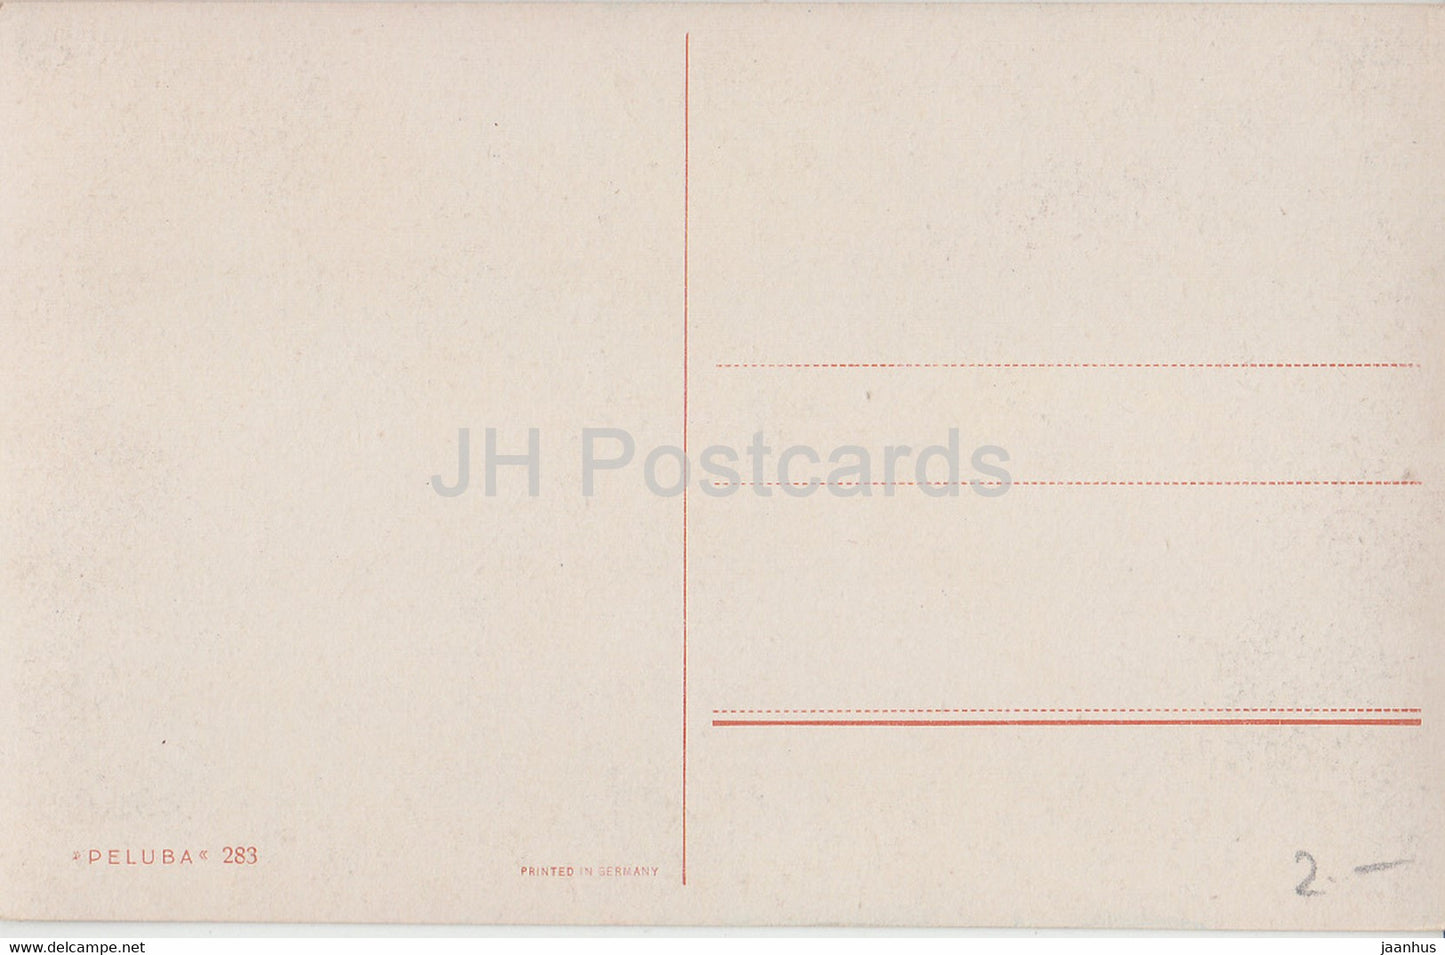 Illustration - Boot - Schaf - Peluba 283 - alte Postkarte - Deutschland - unbenutzt